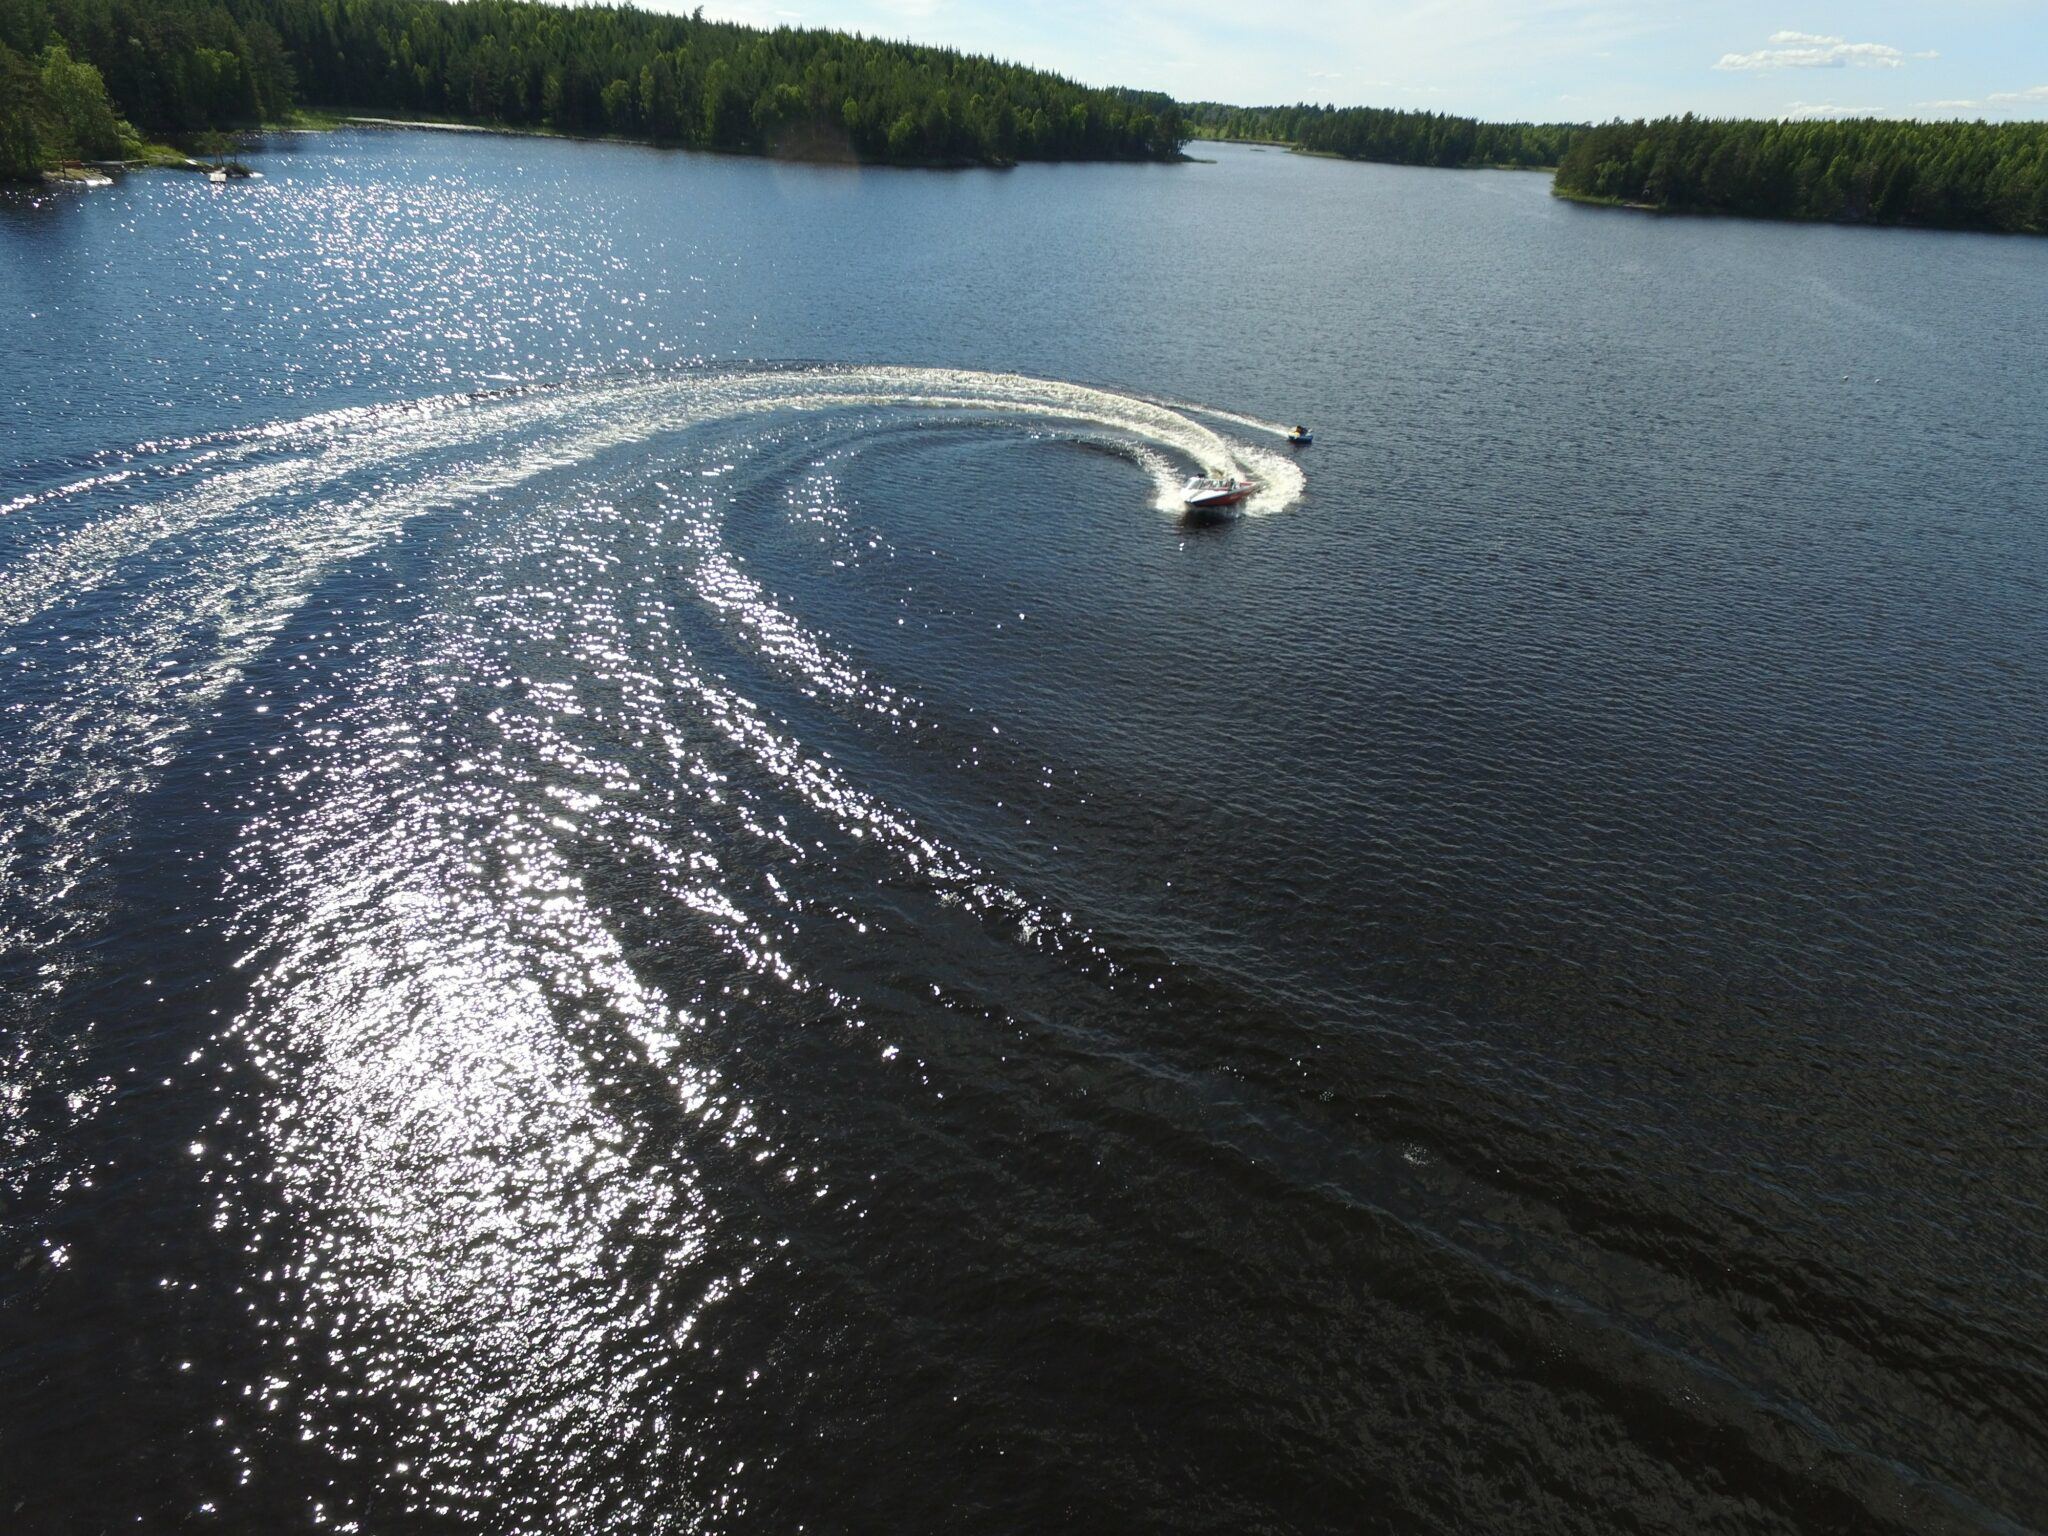 Drönarfoto på en motorbåt som svänger kraftigt på en sjö.